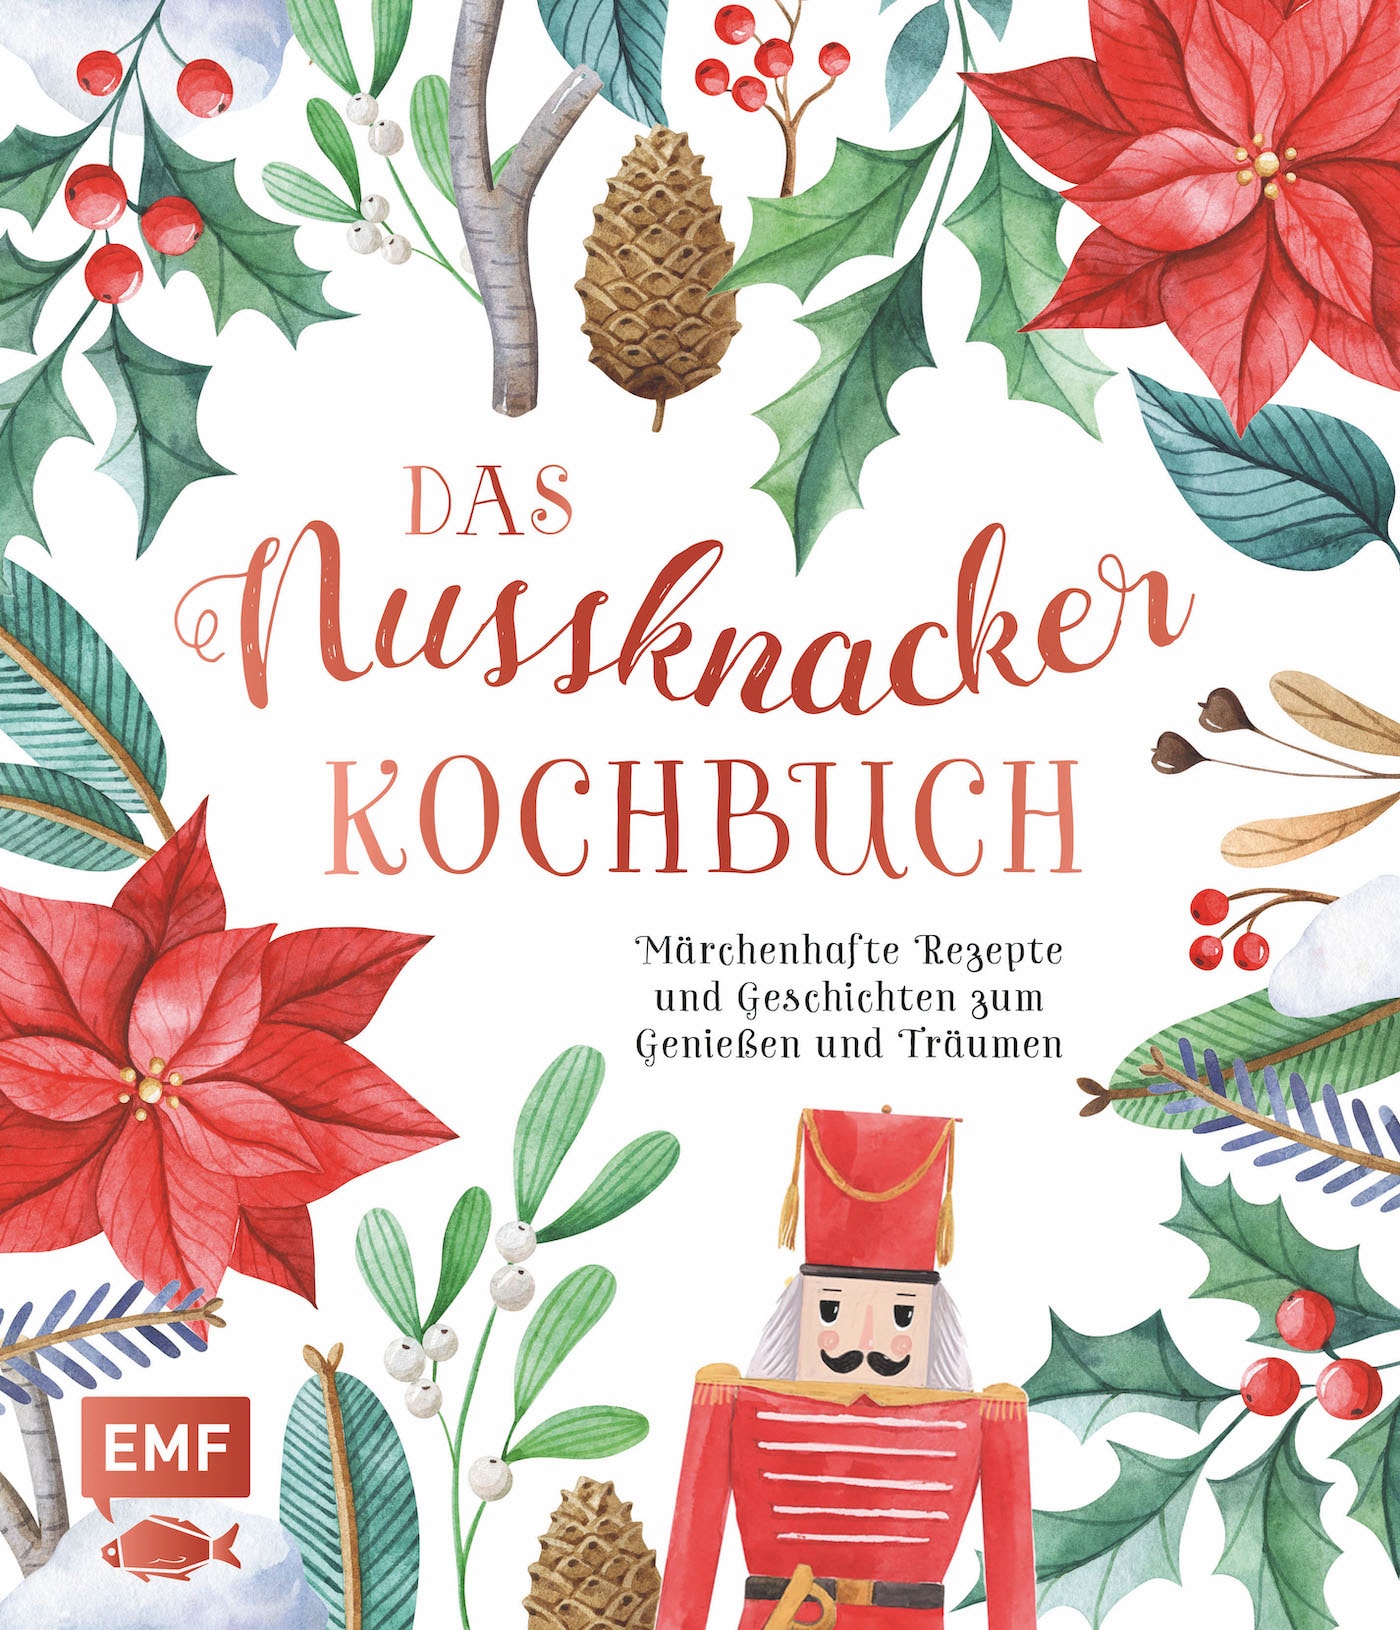 Das Nussknacker Kochbuch von EMF // HIMBEER